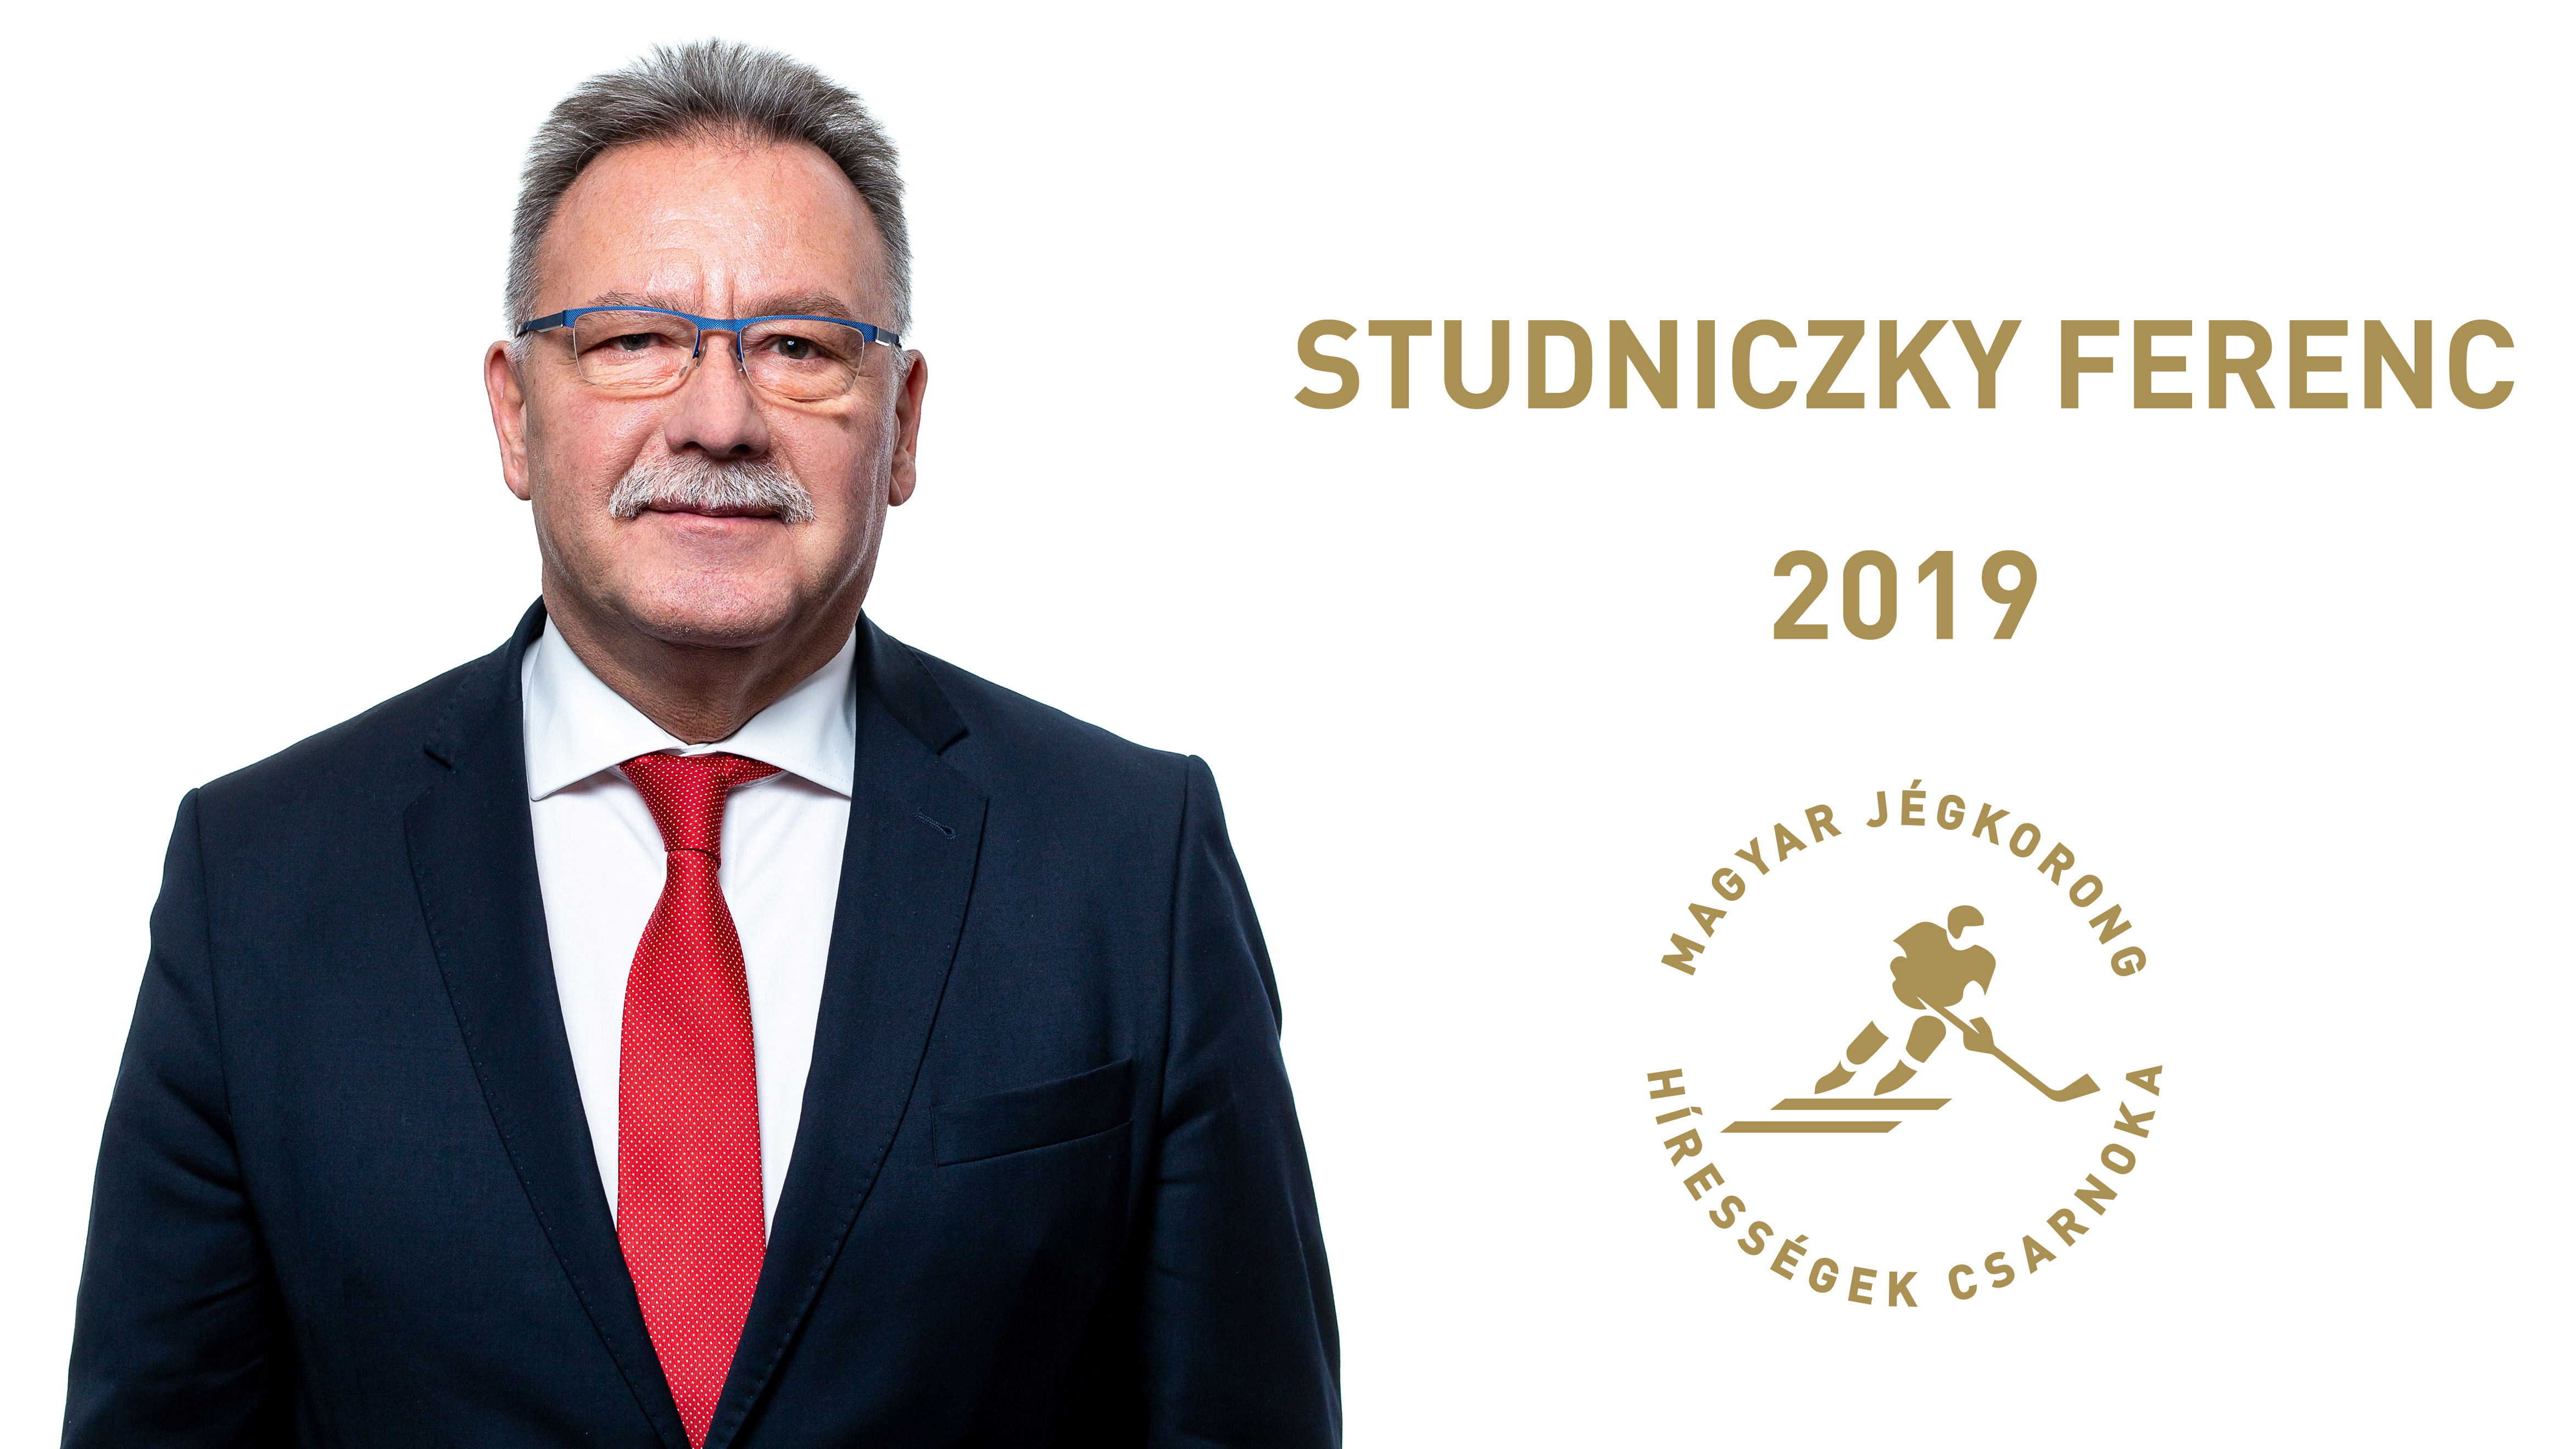 Studniczky Ferenc